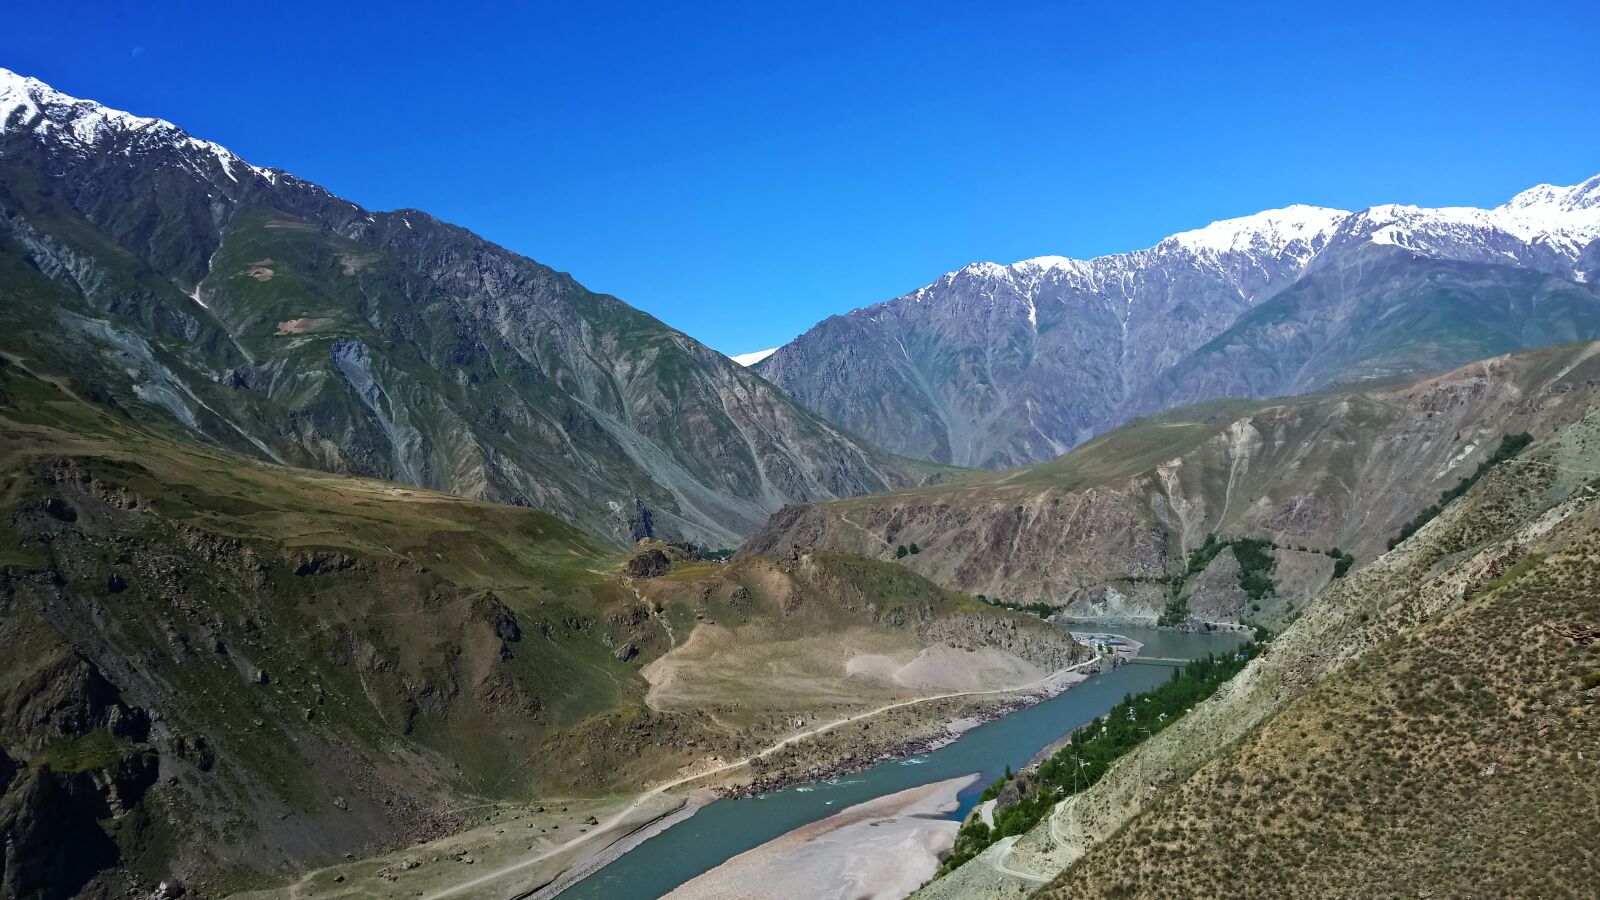 Nokia Lumia 1520 sample photo. Mountains, nature, mountain photography